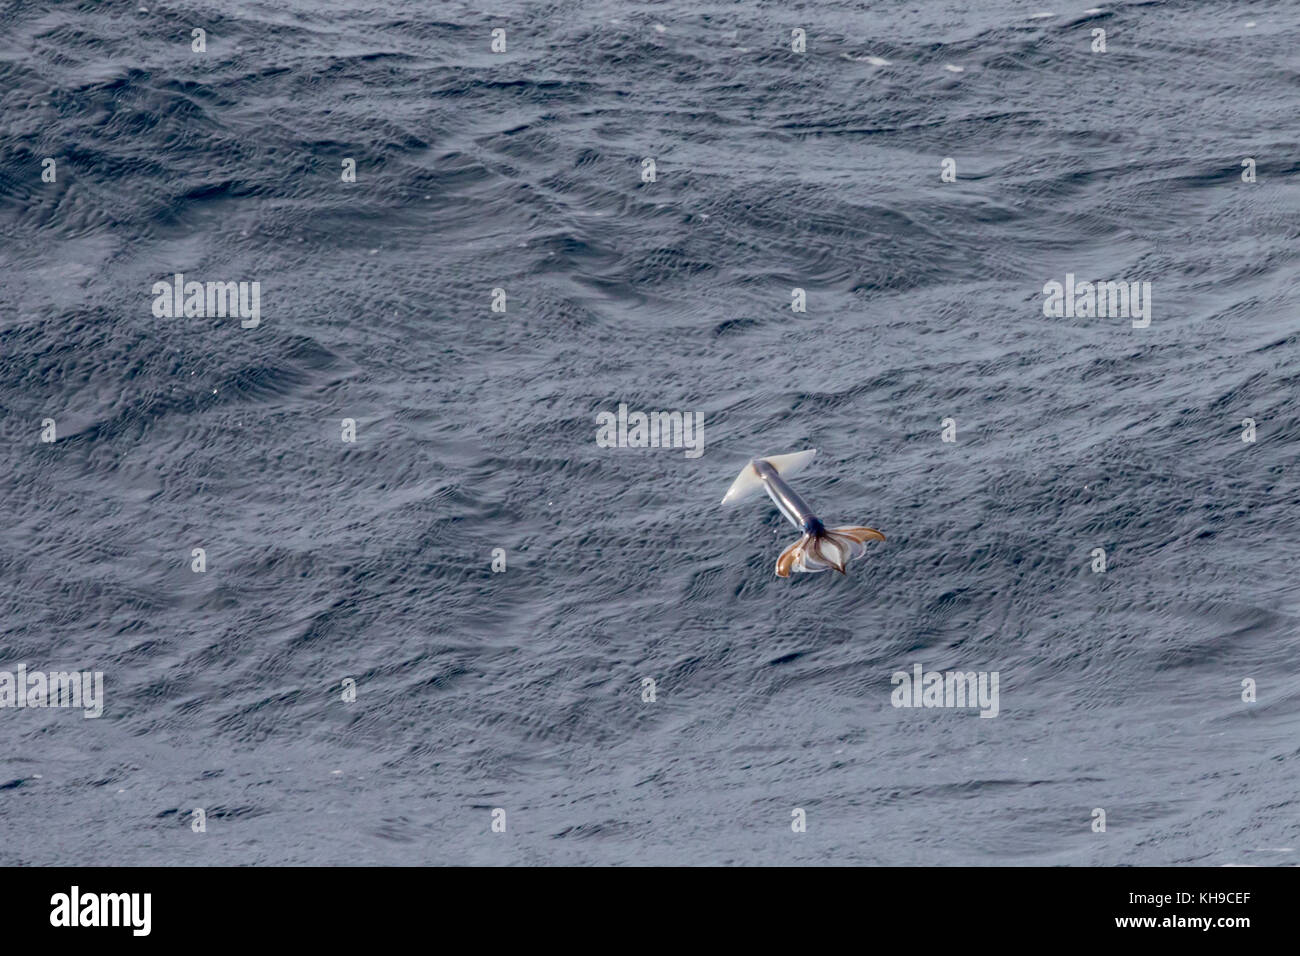 Poco conocido potas despegar desde el agua por el Jet Propulsion para escapar de la depredación en el medio del océano Atlántico Foto de stock